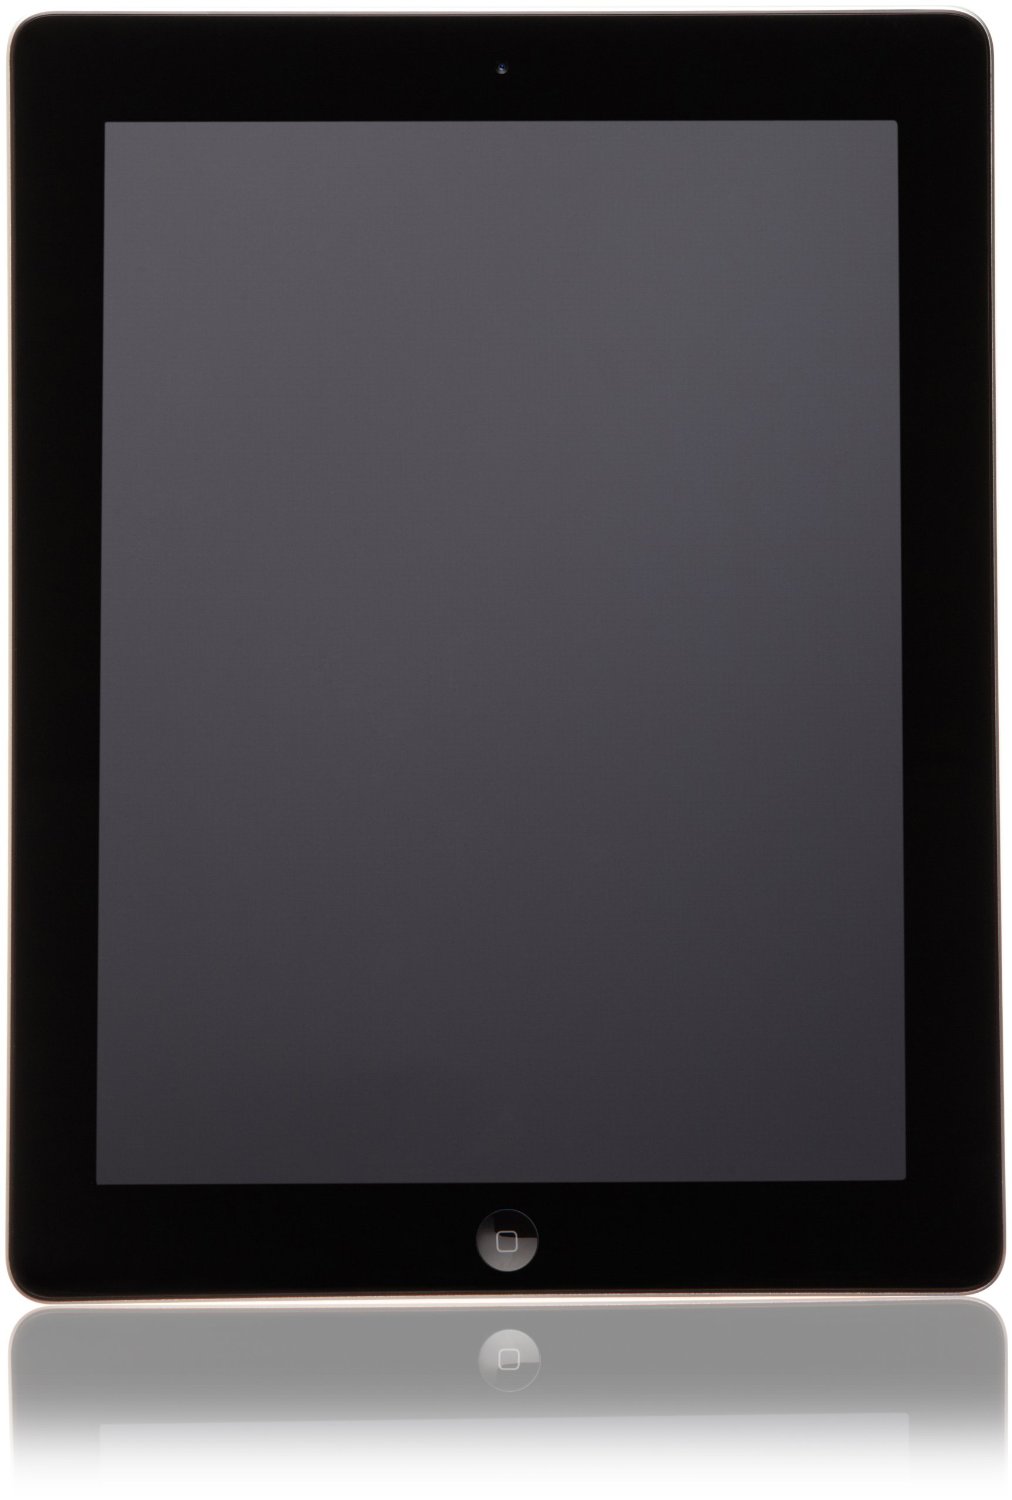 Download MC706LL/A 32GB, Wi-Fi, Black Apple iPad Best Price